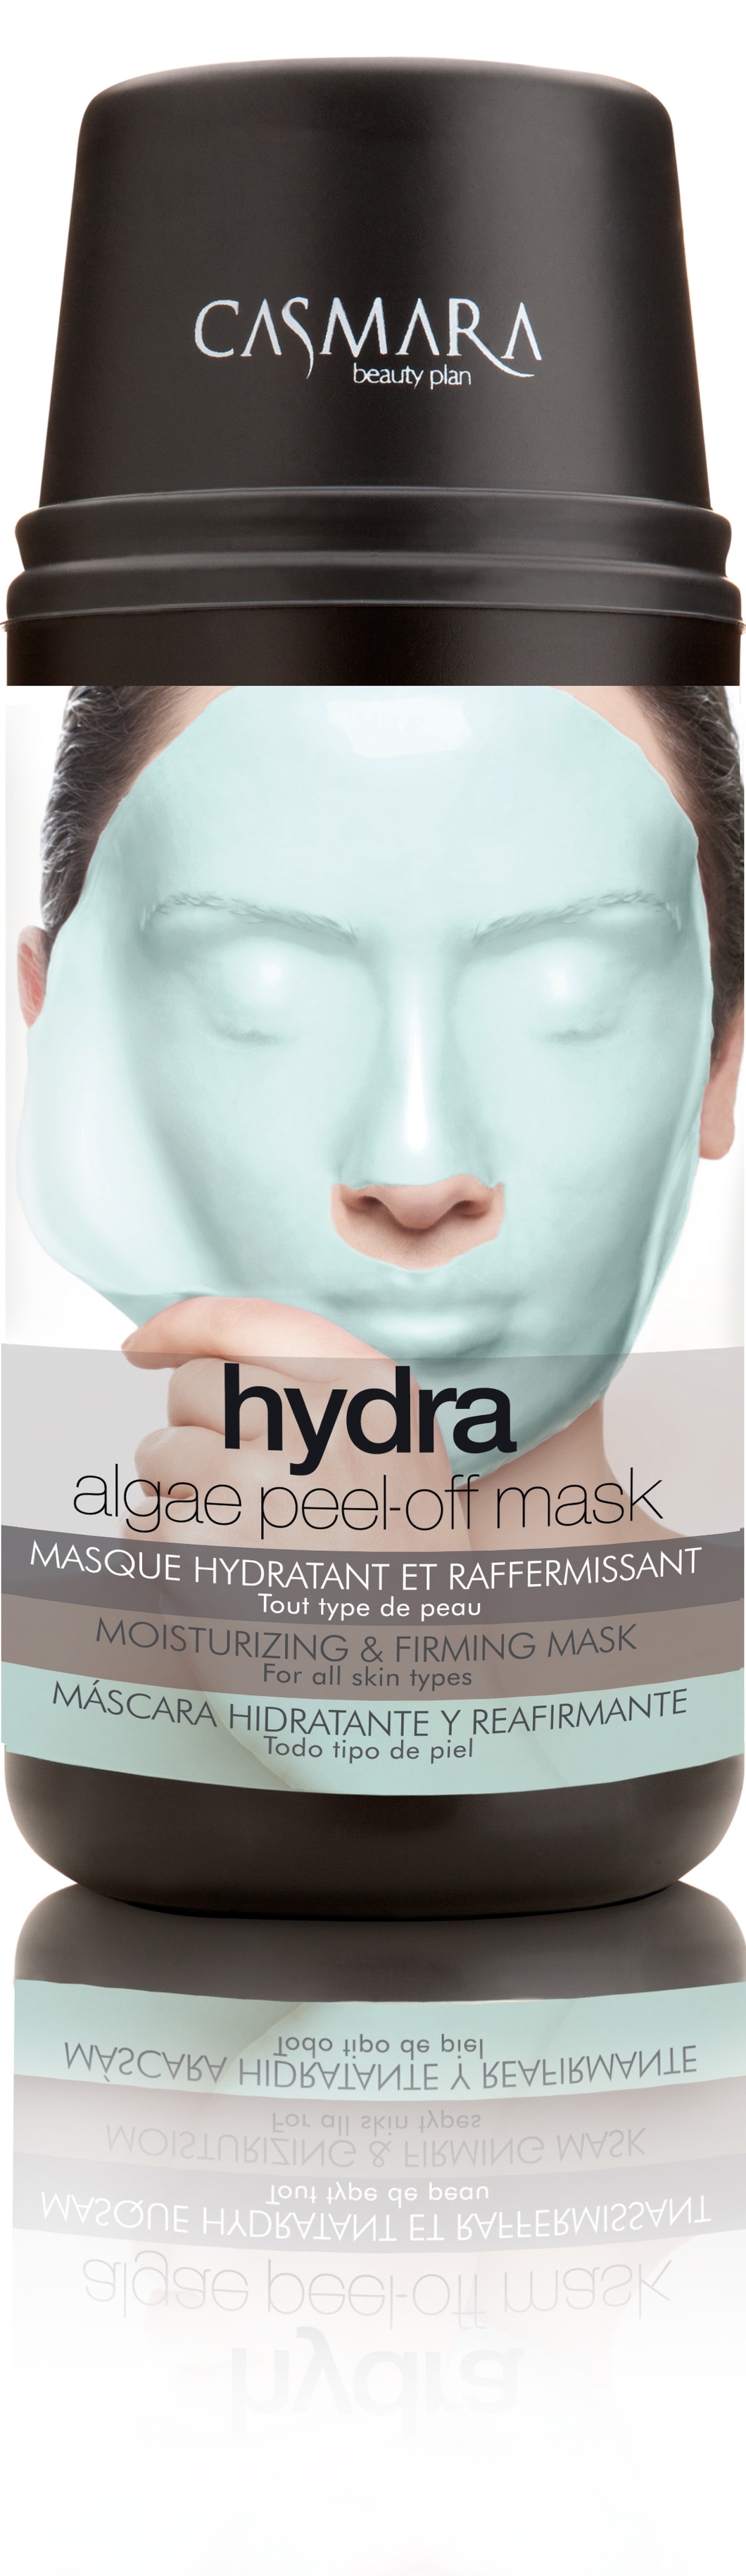 Hydra Mask Kit